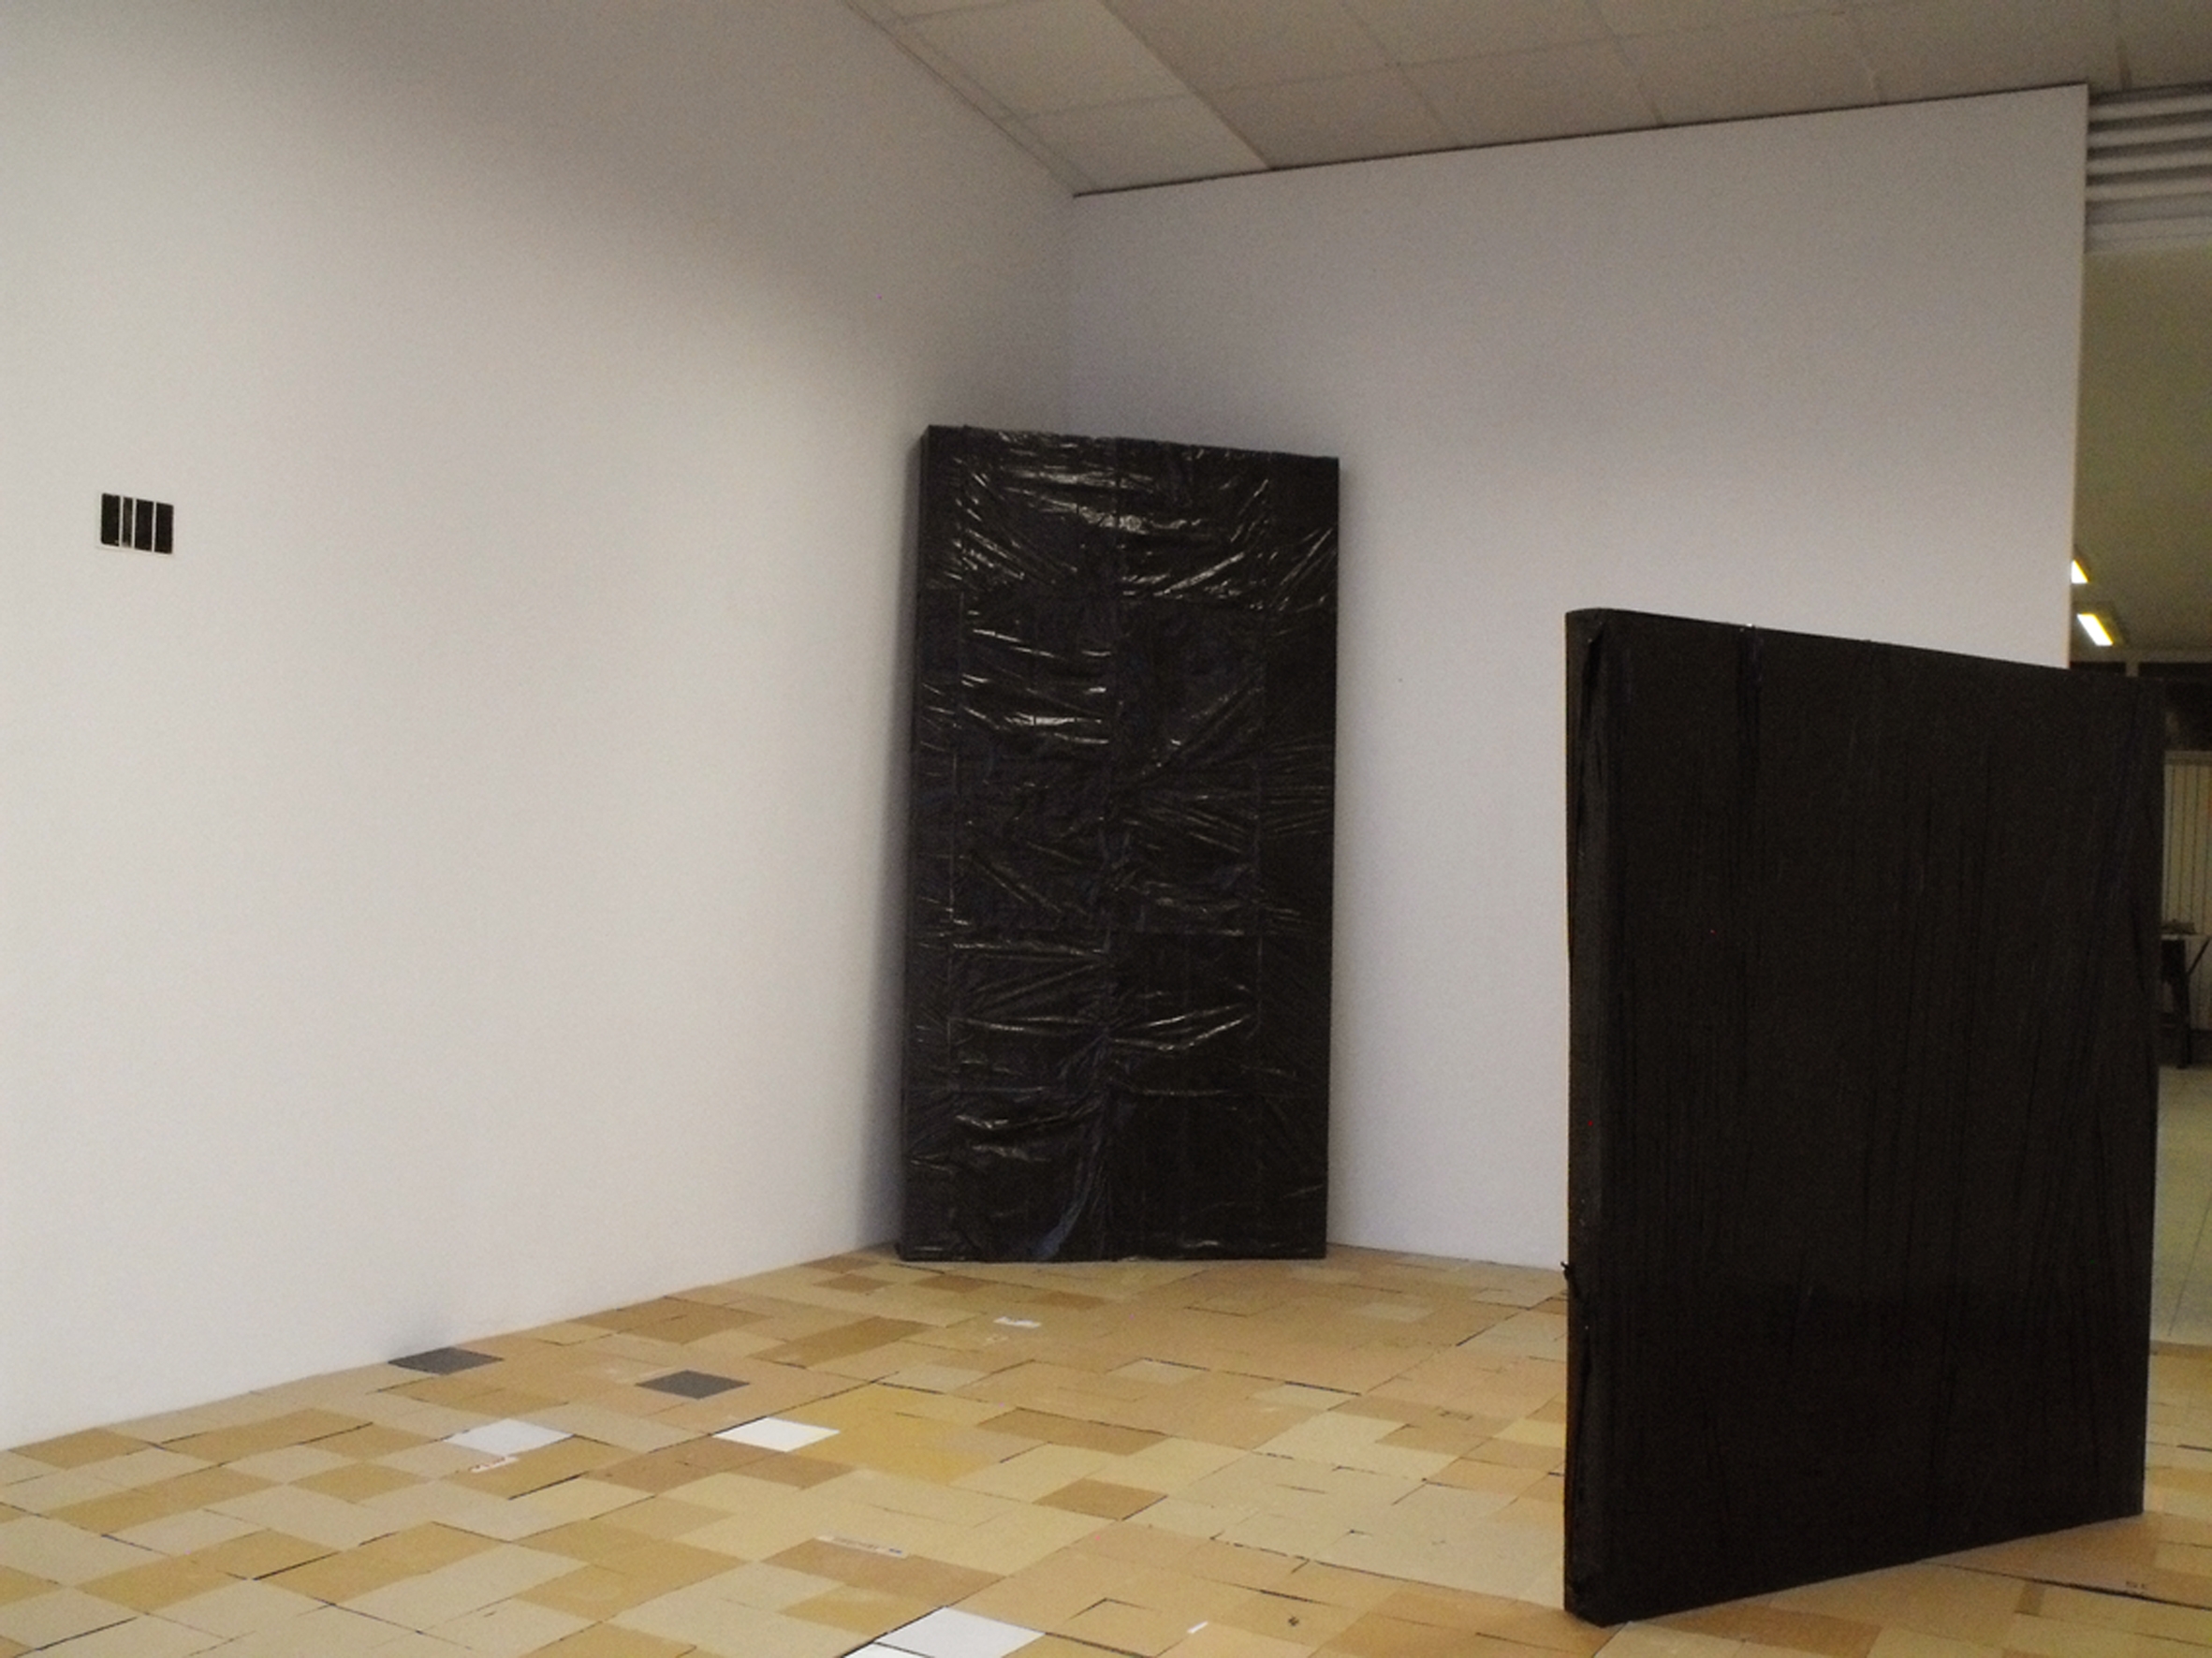 vue d'exposition Idylle(s) et Latitudes, Les Ateliers, Clermont-Ferrand, 2014